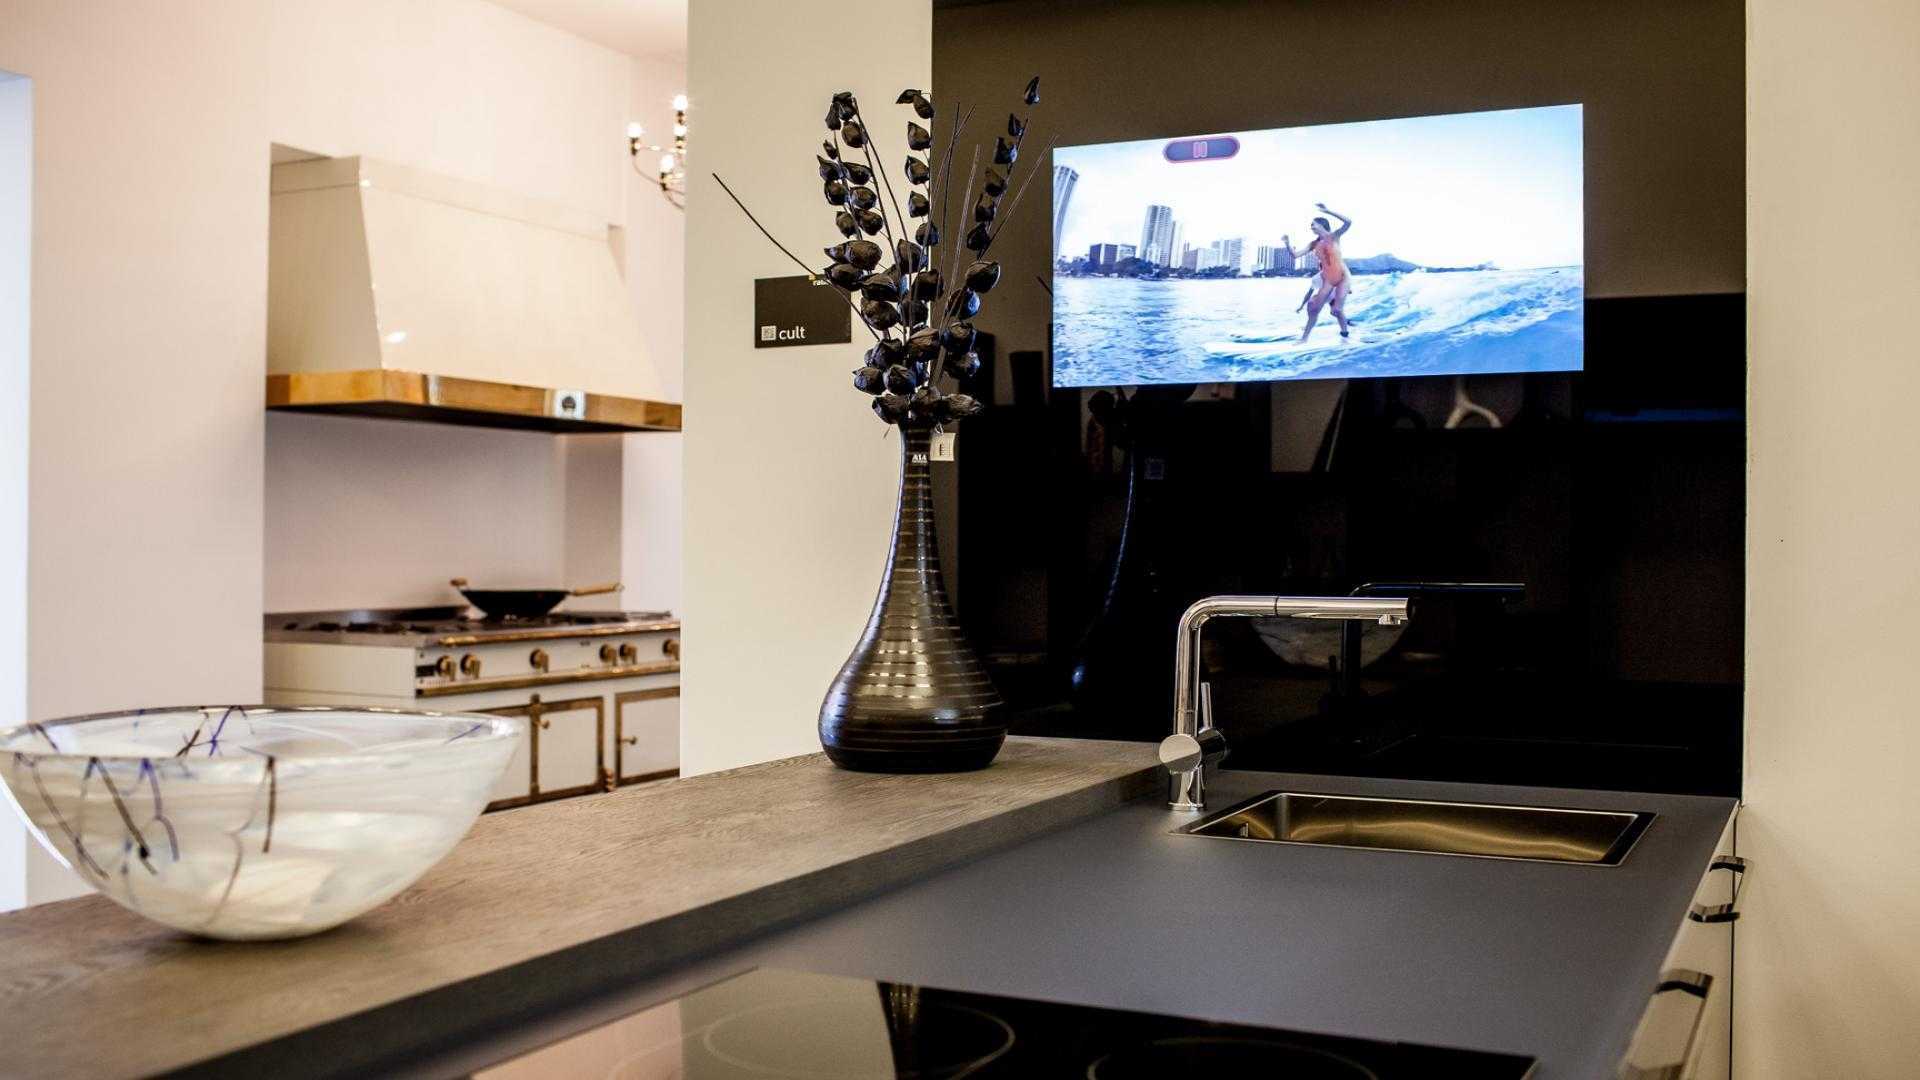 Телевизоры на кухню на авито. Телевизор на кухню со Smart TV 24 дюйма. Встраиваемый телевизор для кухни. Подвесной телевизор на кухню. Телевизор НАК кухню на стену.